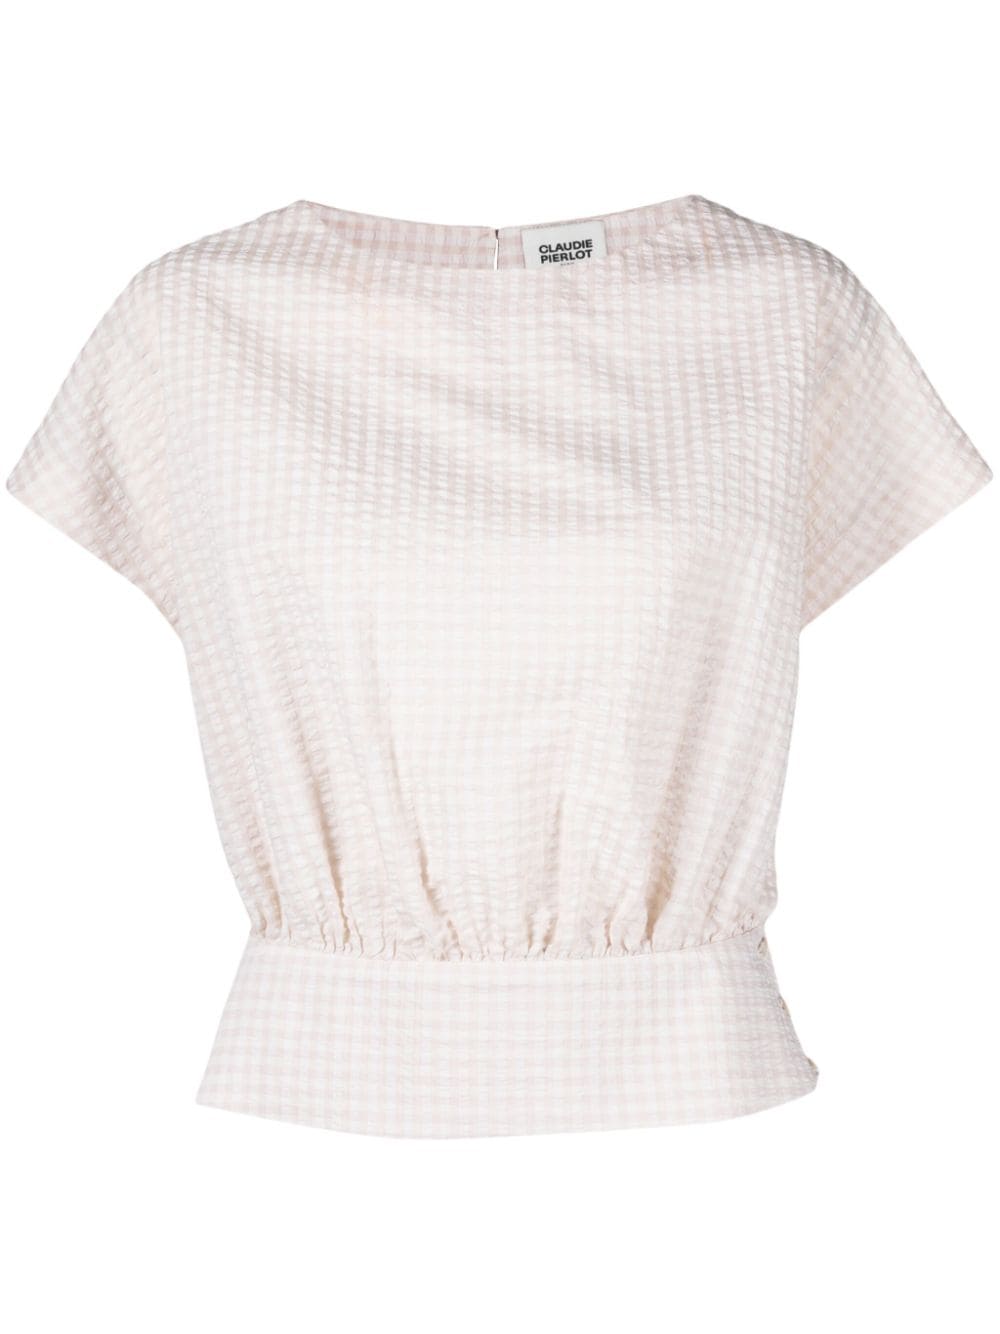 Claudie Pierlot boat-neck seersucker-texture blouse - Neutrals von Claudie Pierlot